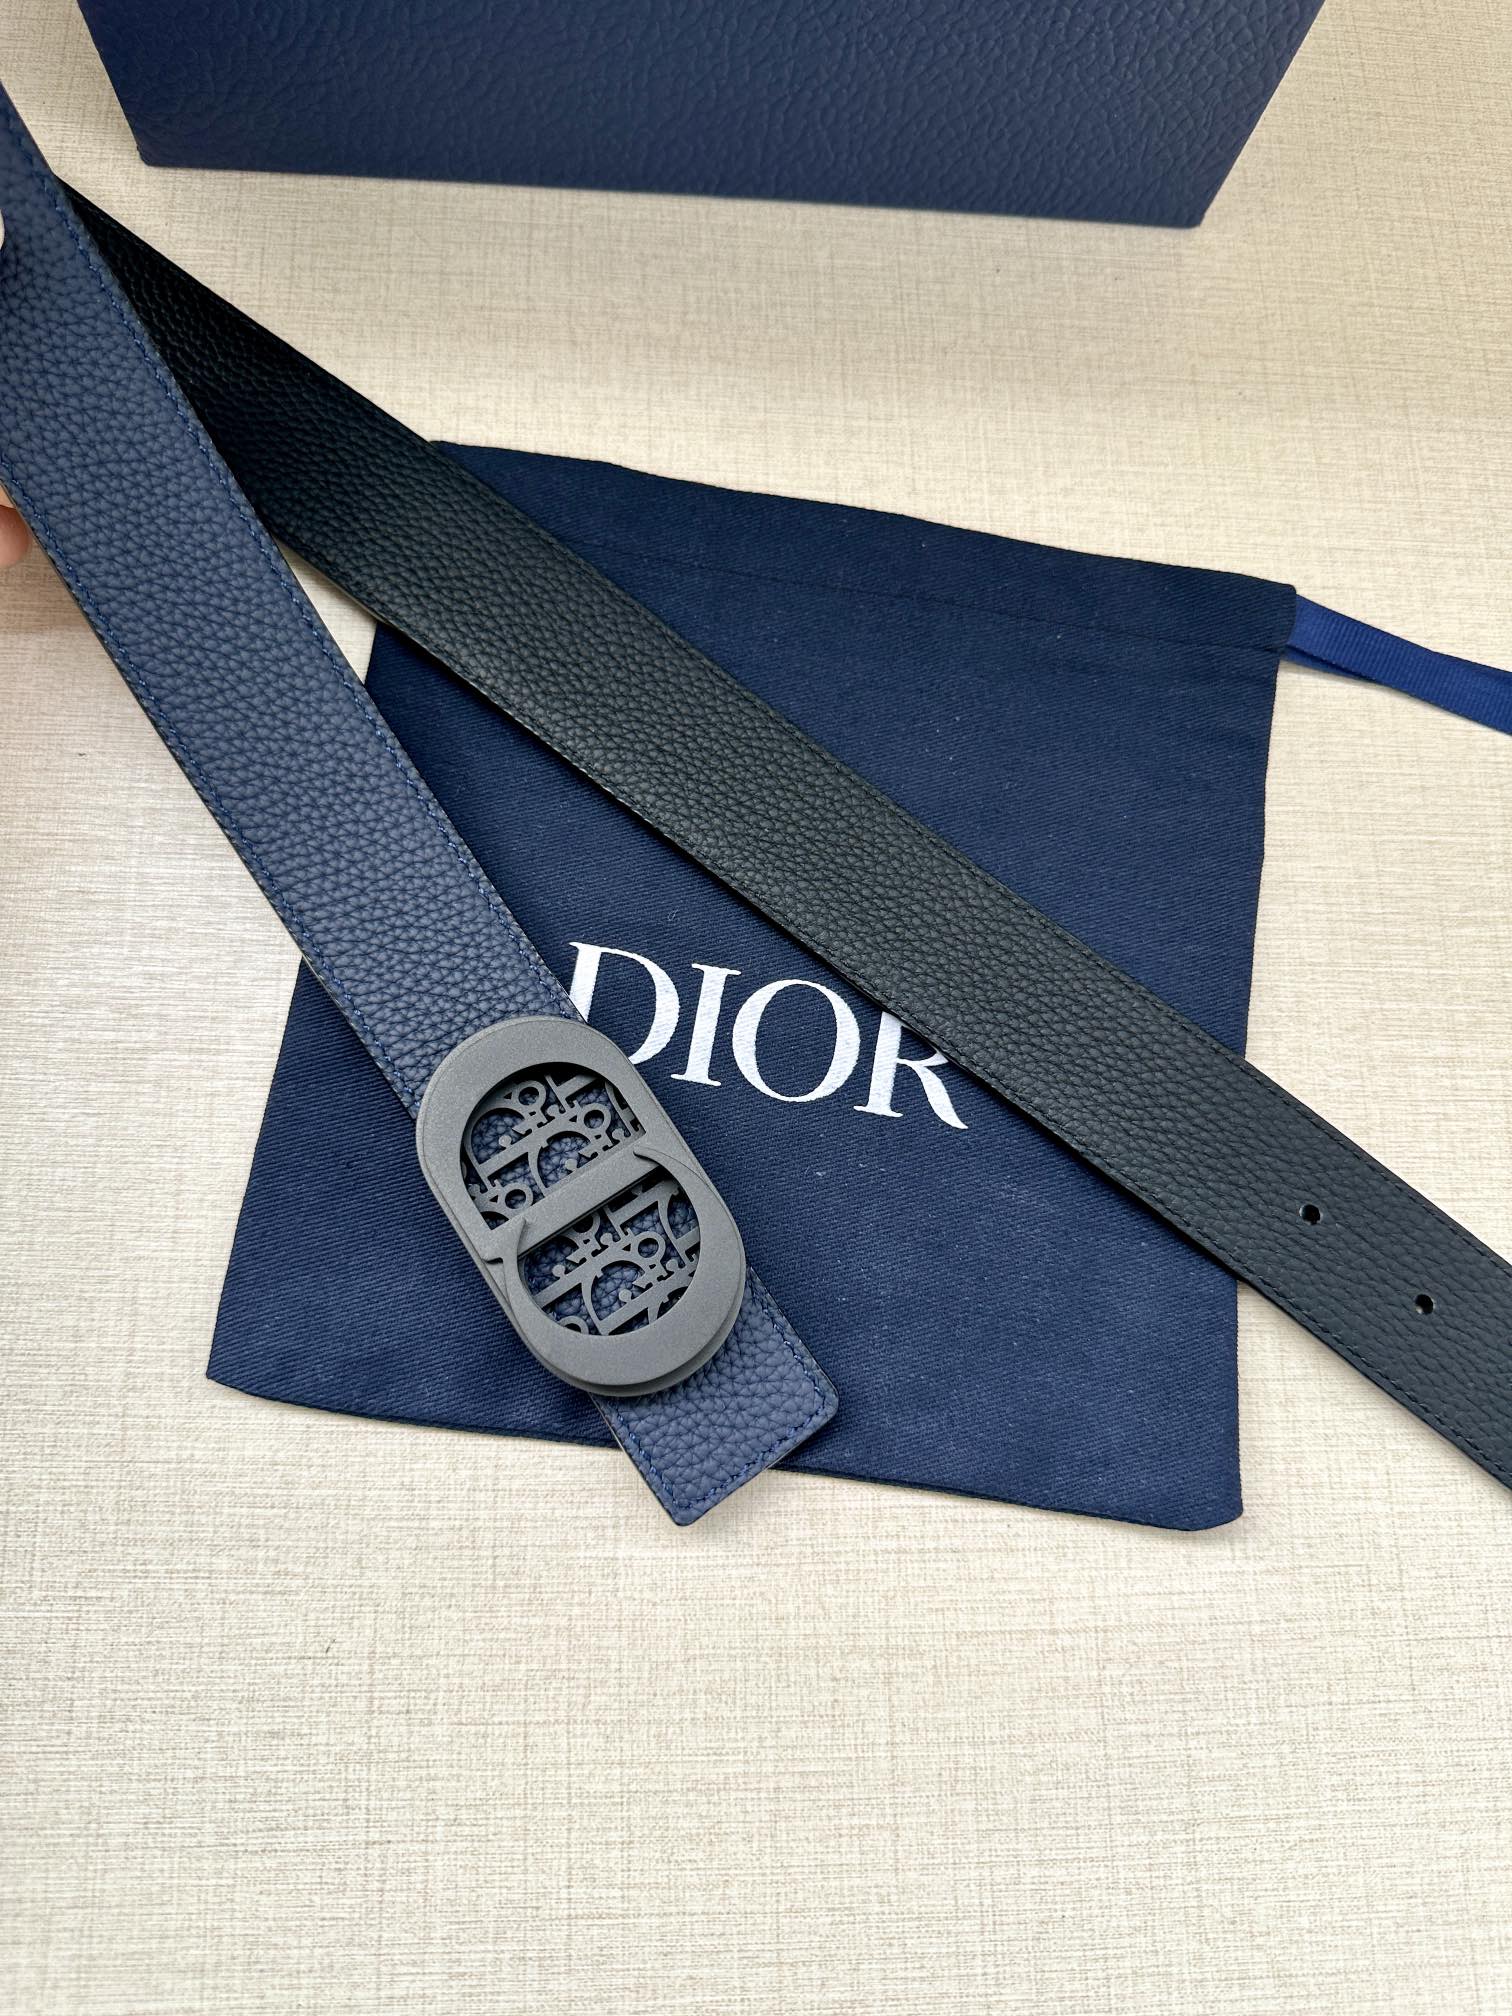 宽度3.5cm这款白/金色饰面黄铜腰带扣采用“CD”标志点缀镌刻有DiorOblique图案经典元素呈现